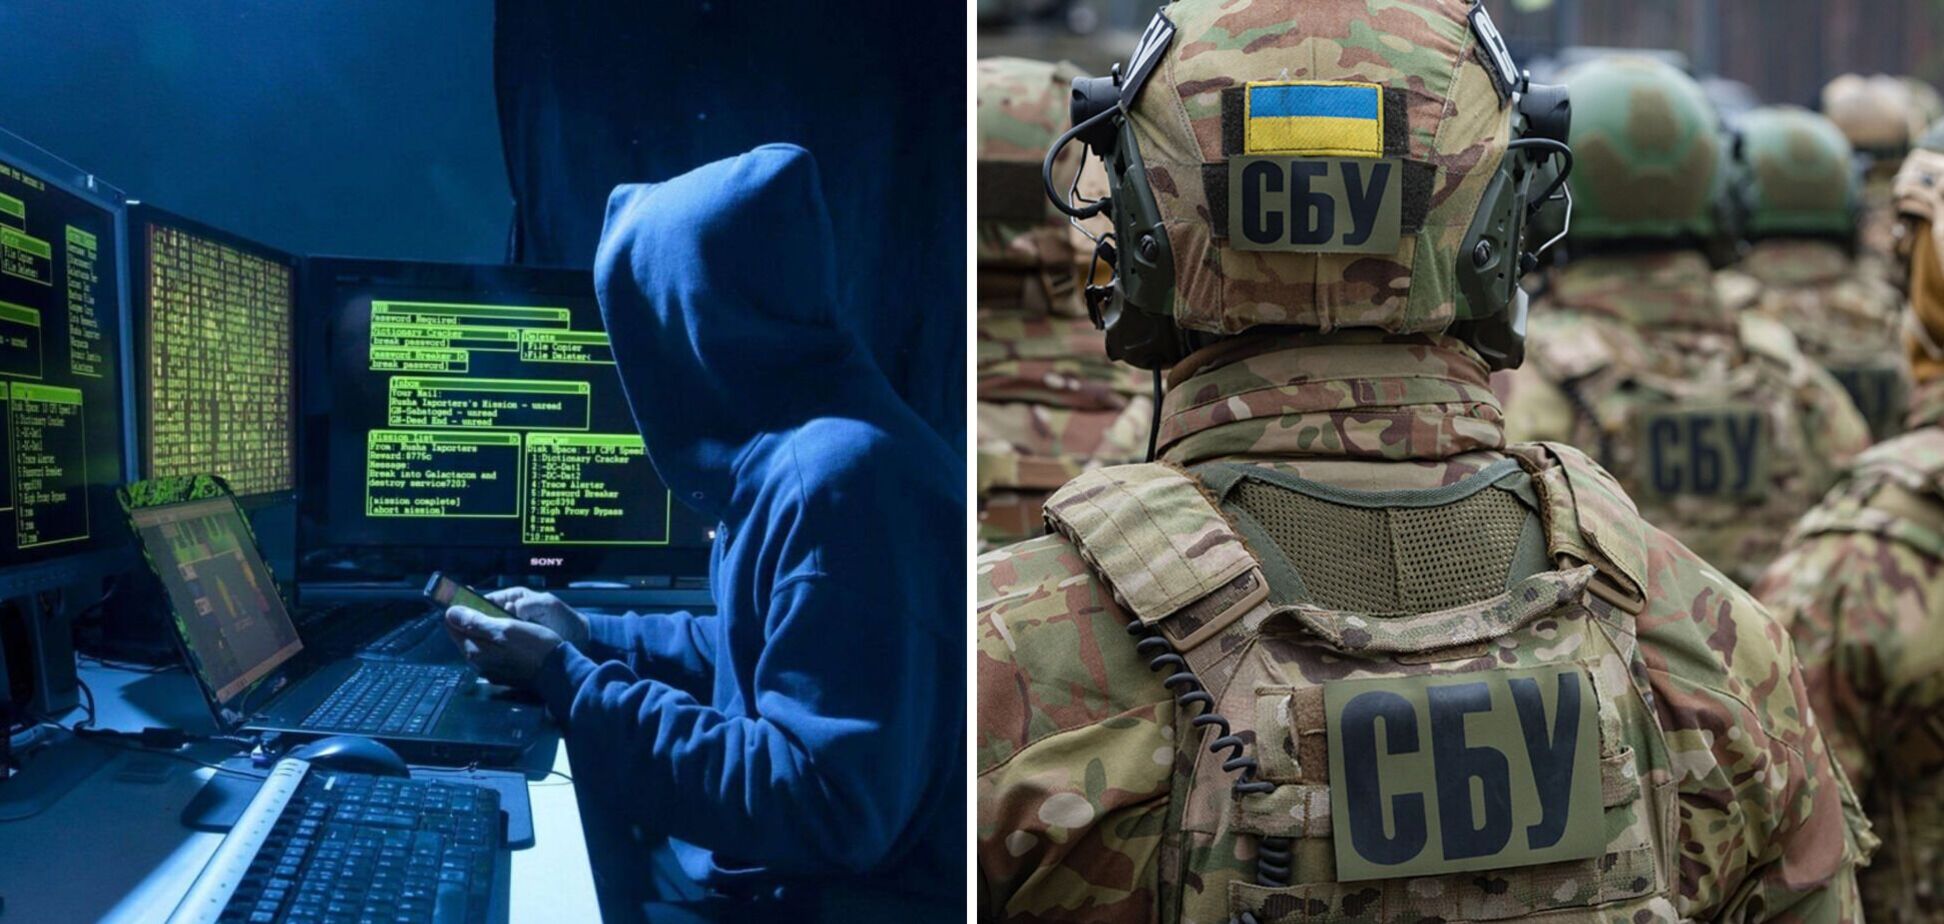 СБУ заподозрила Россию в кибератаке на Украину: появилась реакция Офиса президента и международного сообщества